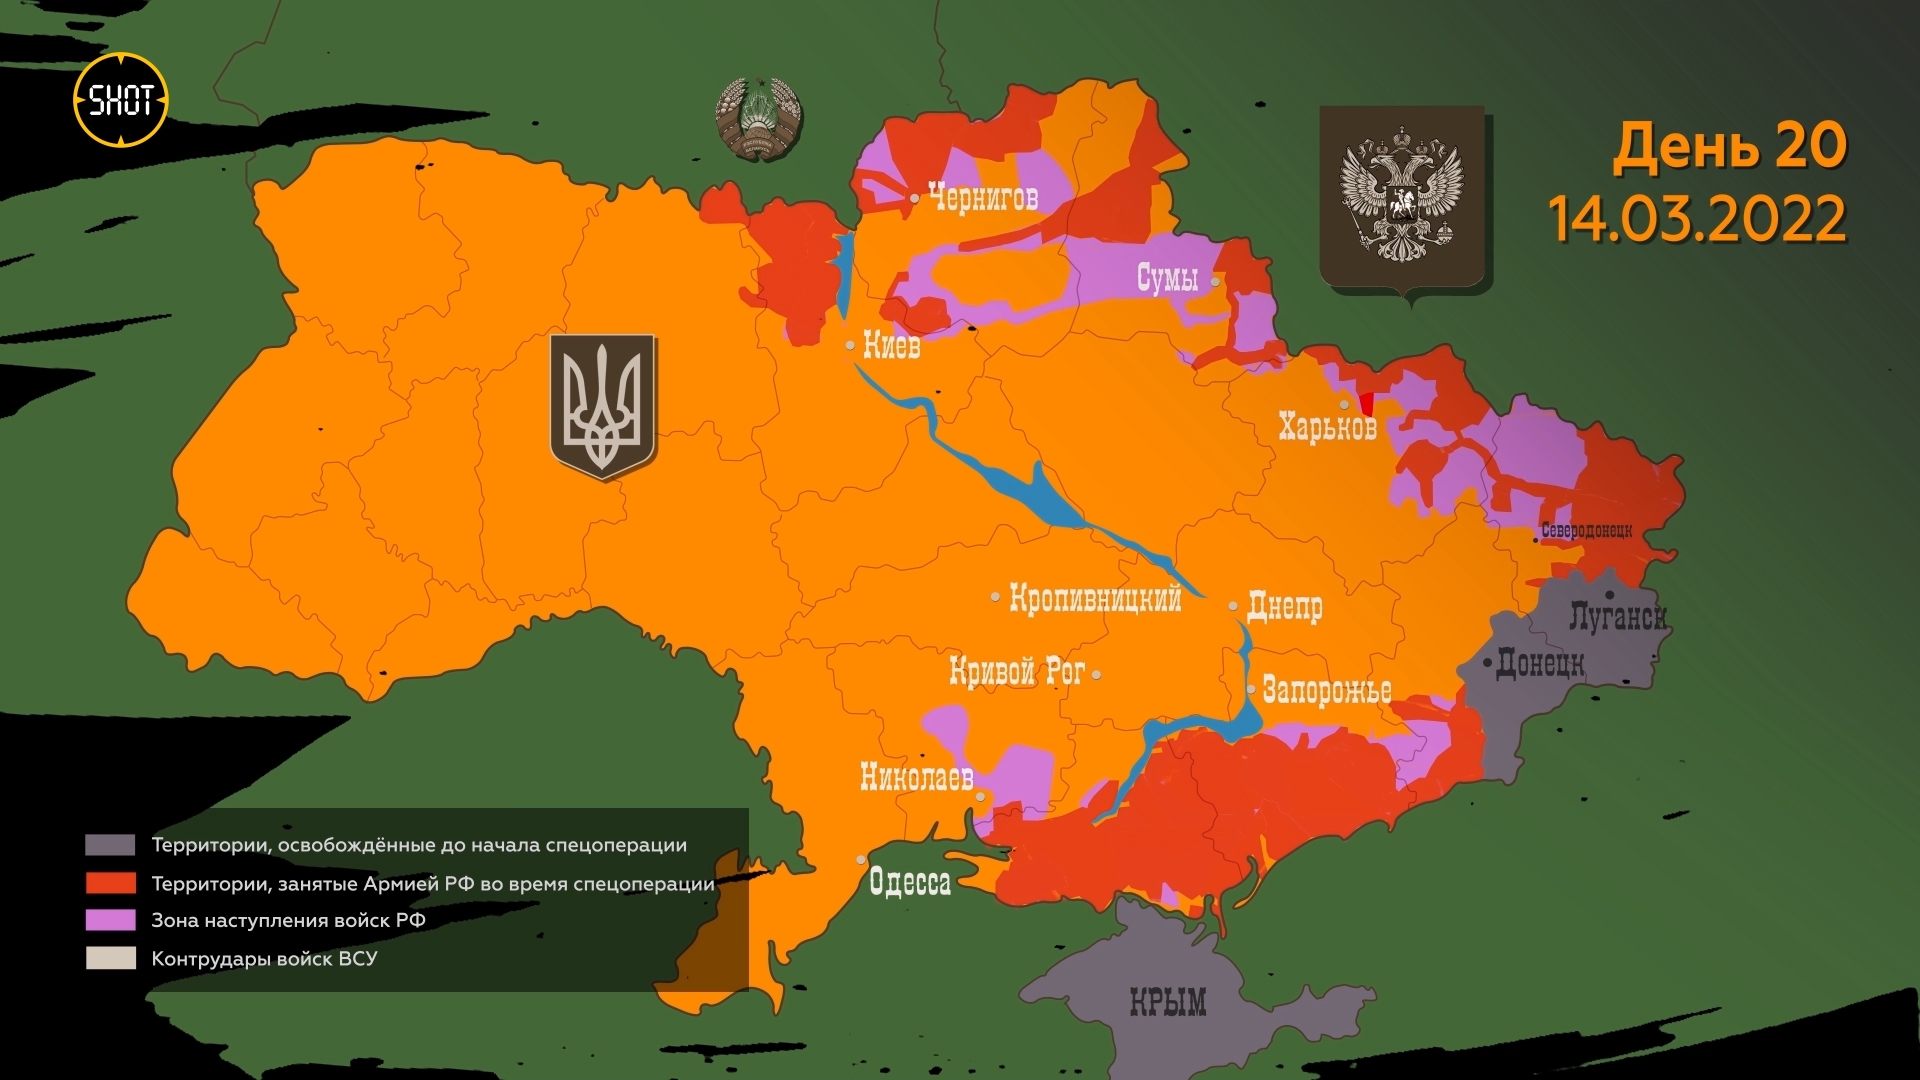 Хронология спецоперации на Украине за 2,5 минуты — с первого дня до полногоосвобождения Луганской Народной Республики.